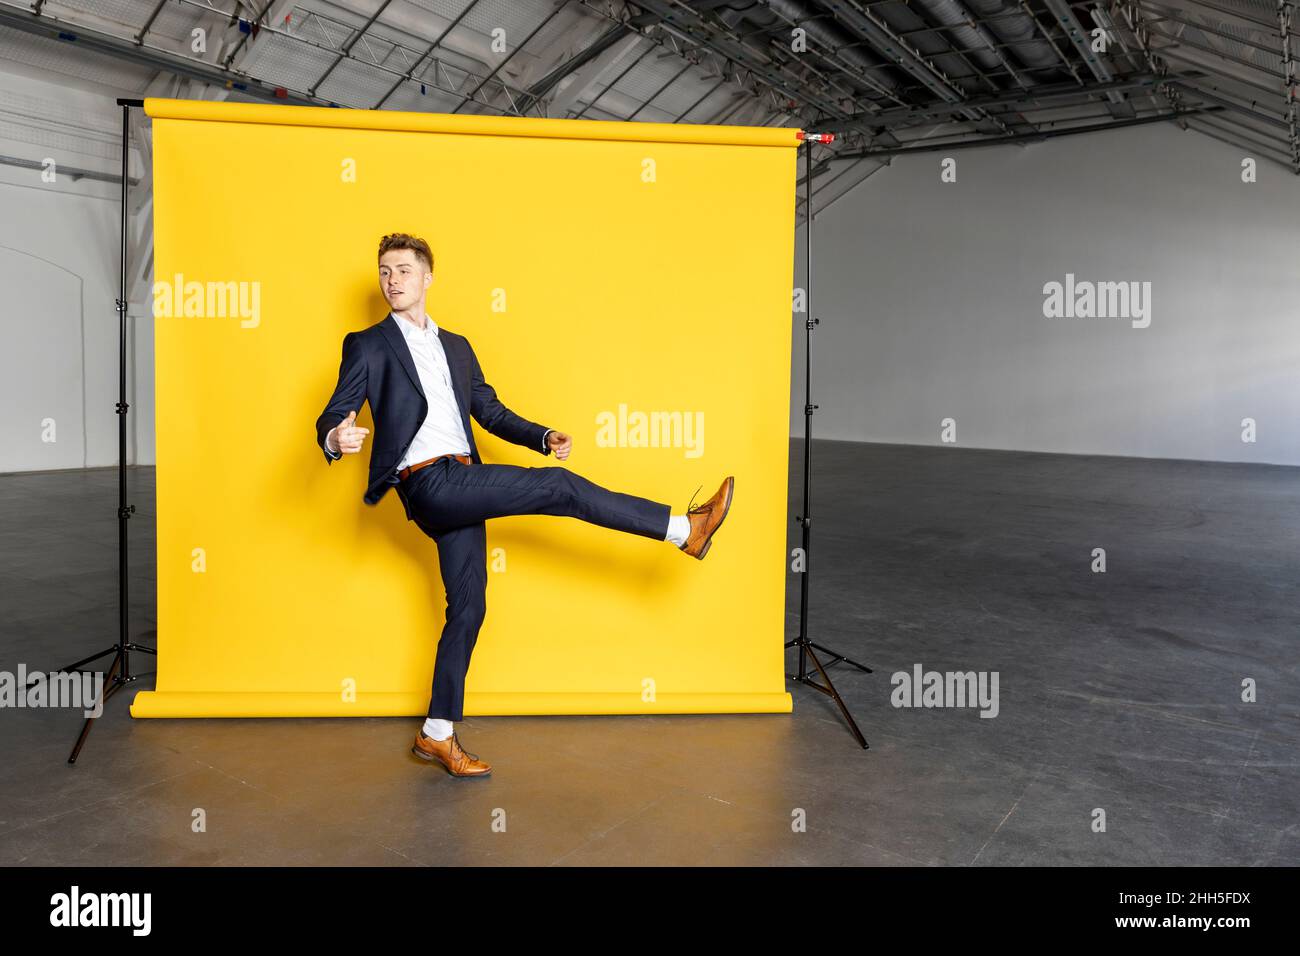 Homme d'affaires debout sur une jambe levant le pied devant un fond jaune Banque D'Images